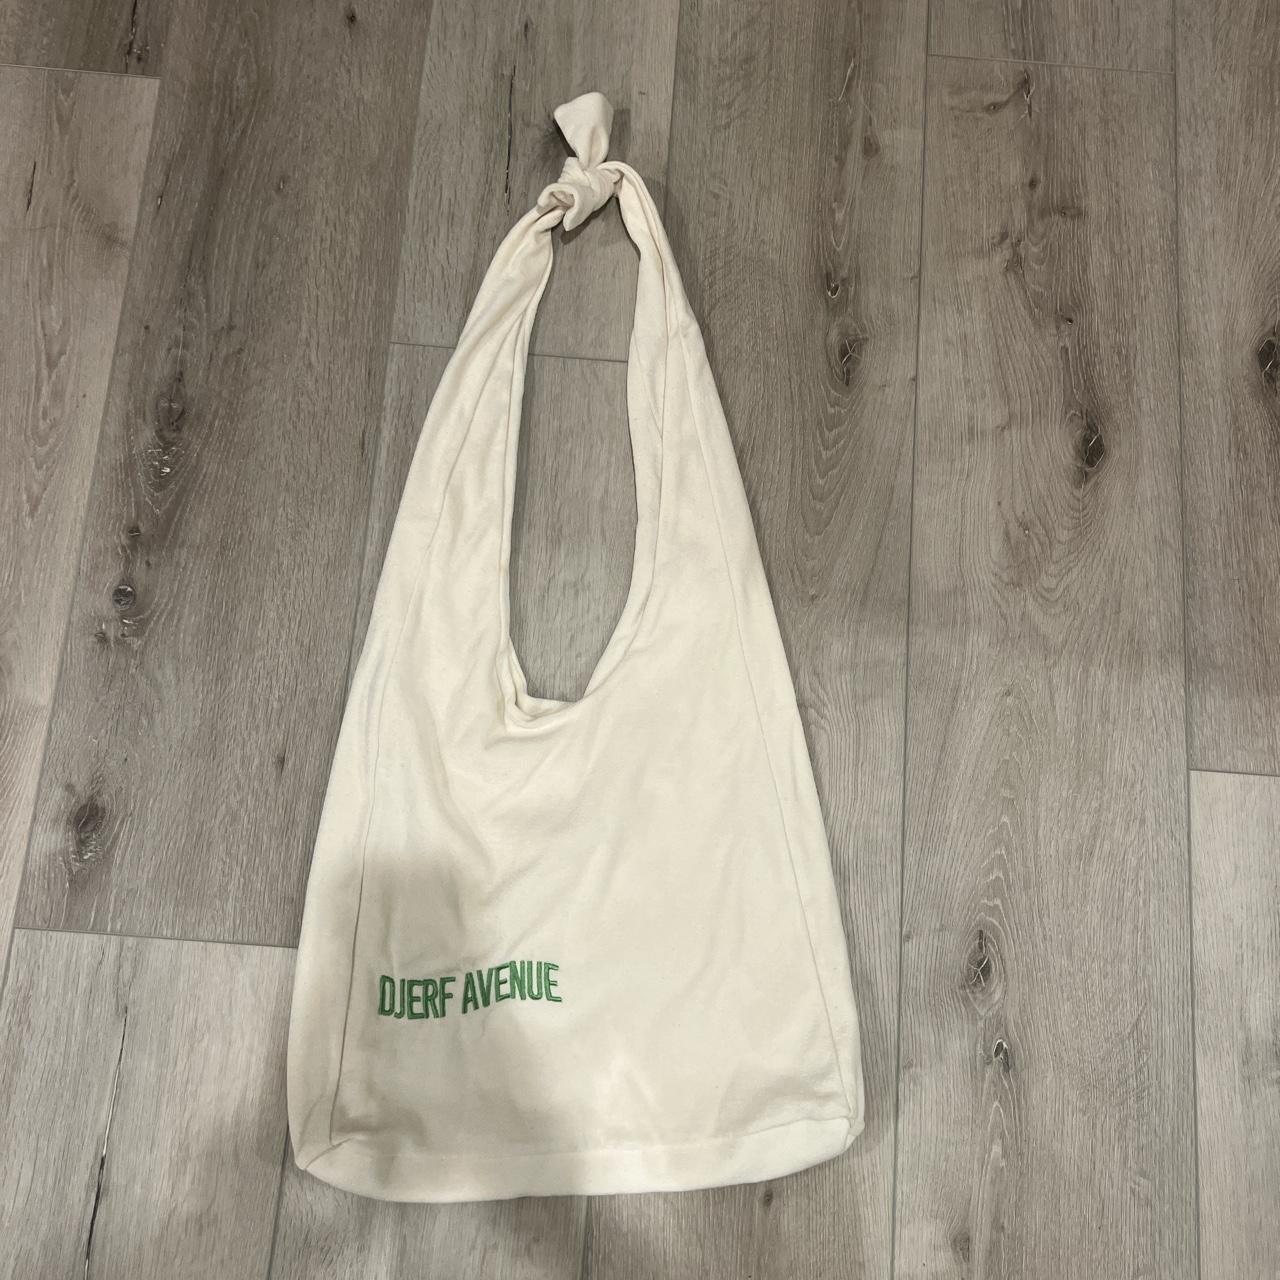 Djerf Avenue Women's Cream Bag | Depop